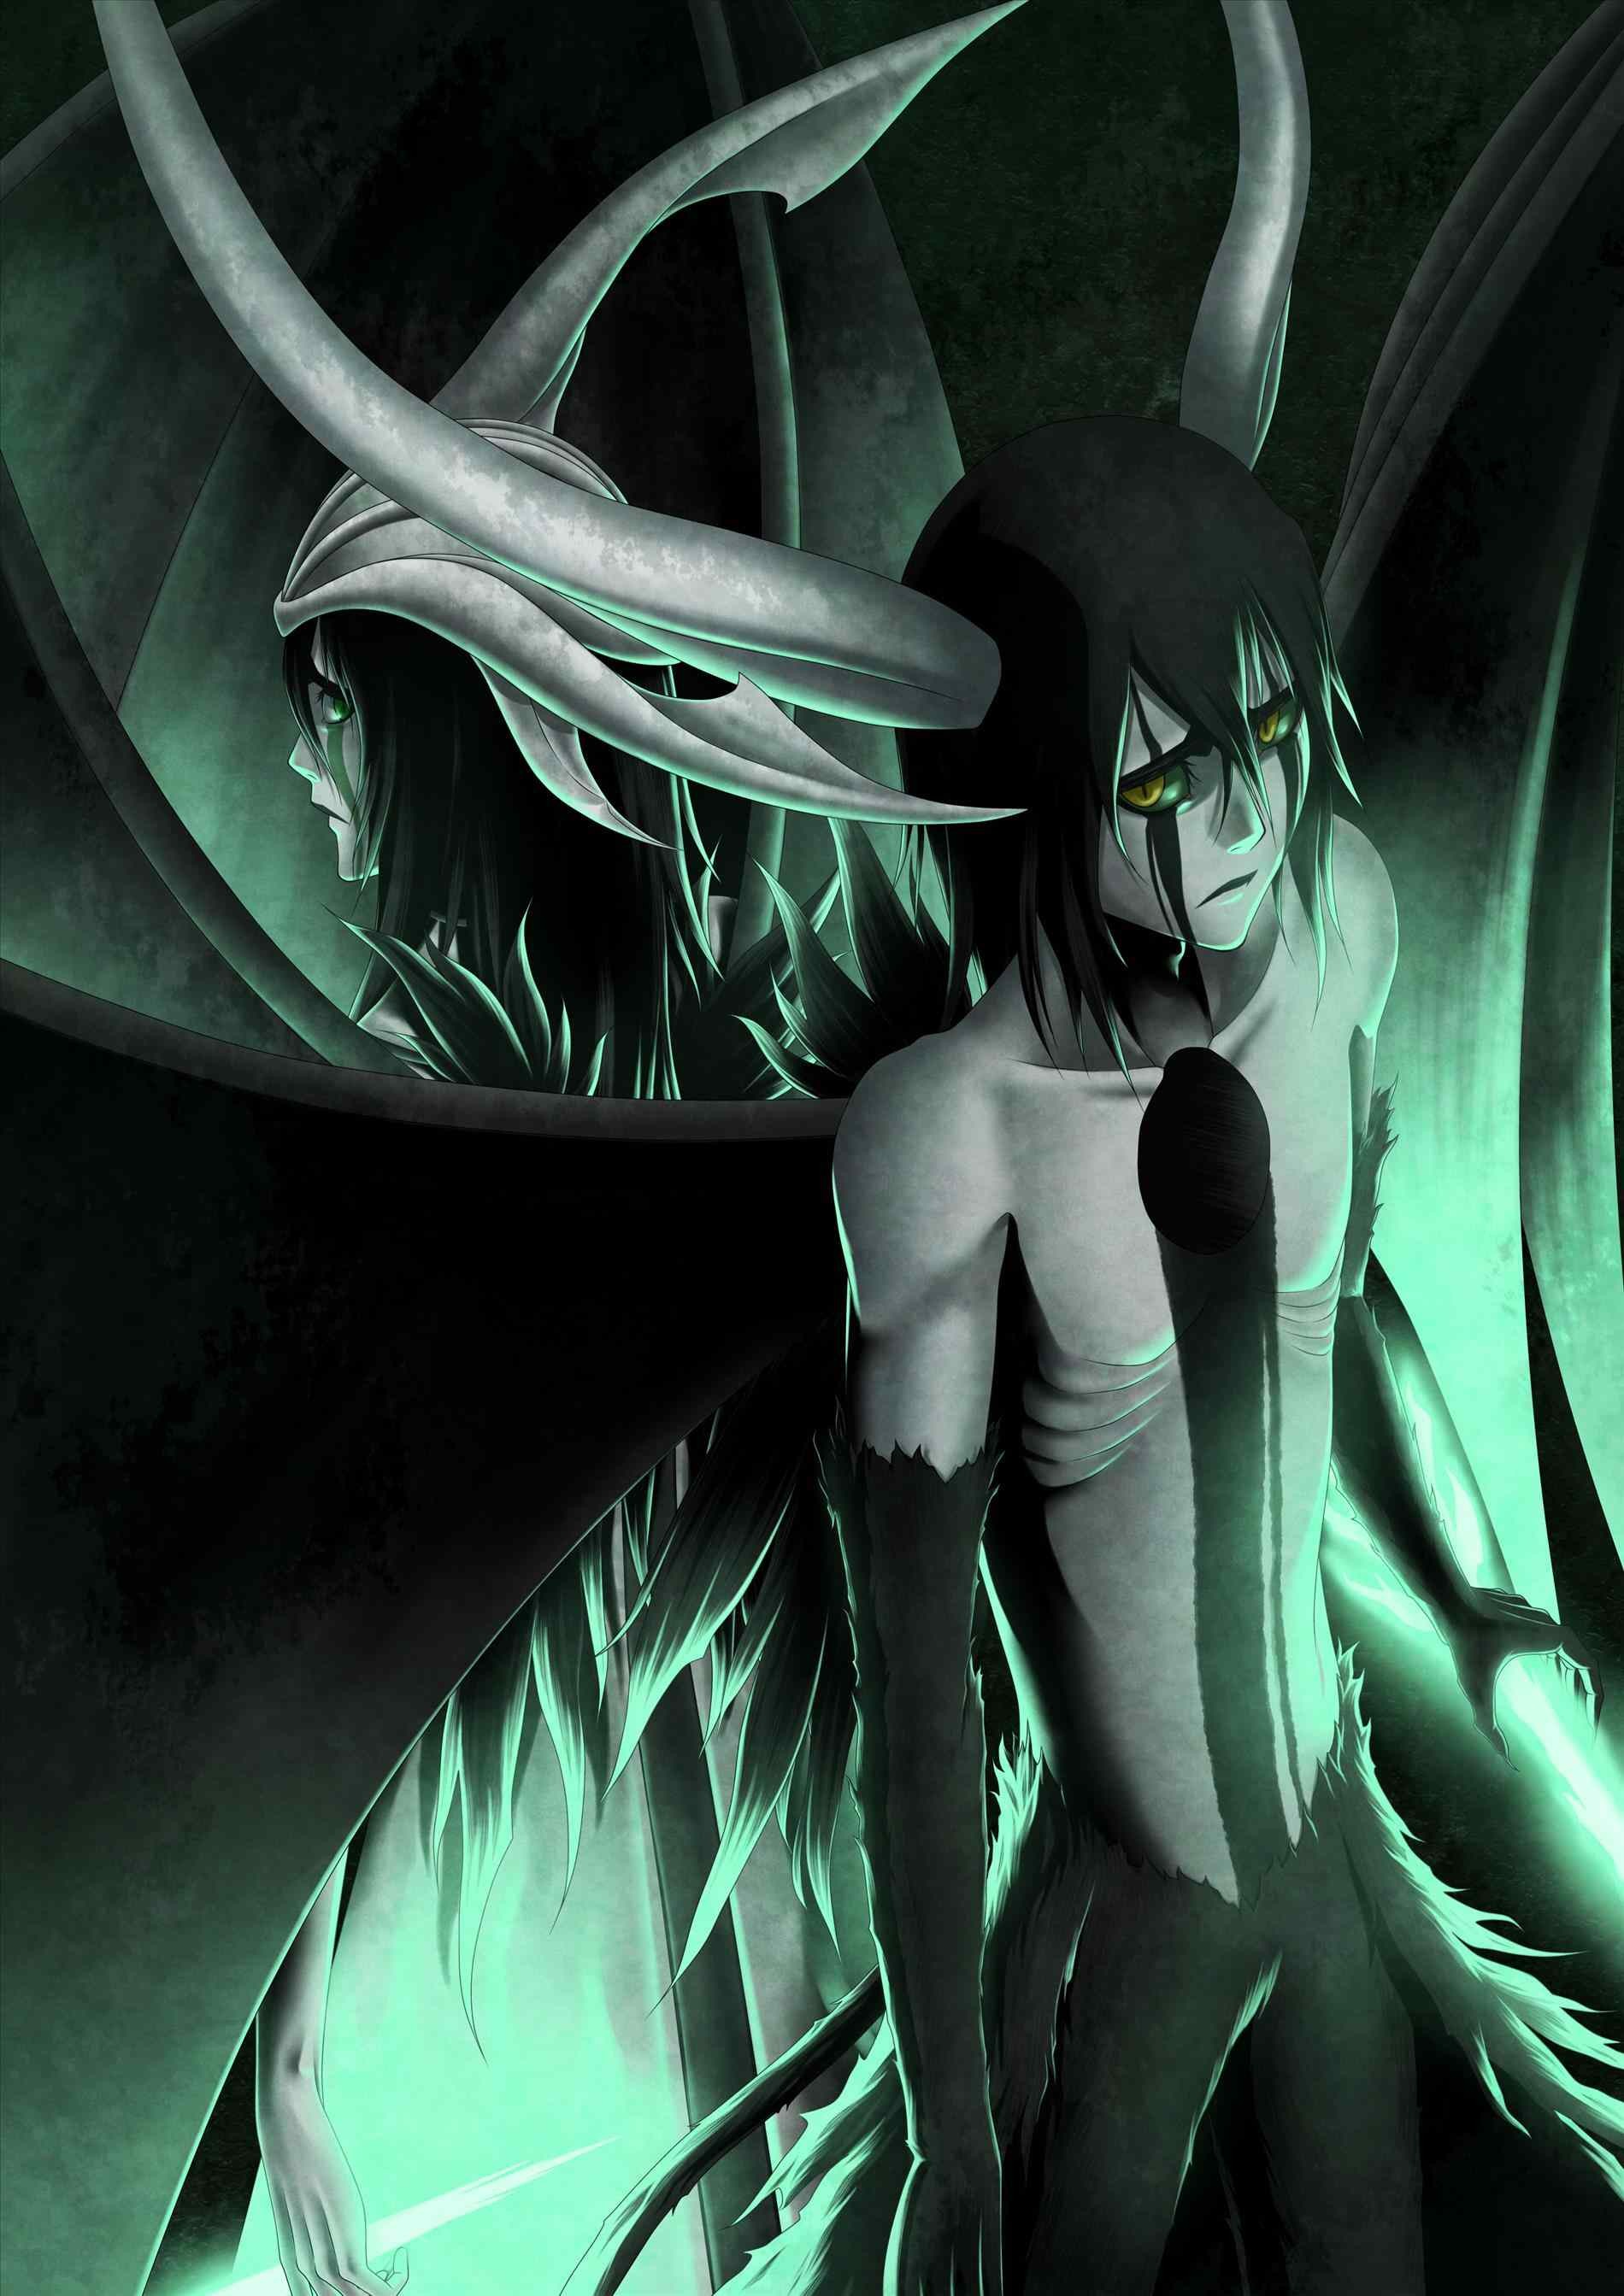 ulquiorra cifer fondo de pantalla,cg artwork,personaje de ficción,anime,demonio,ilustración